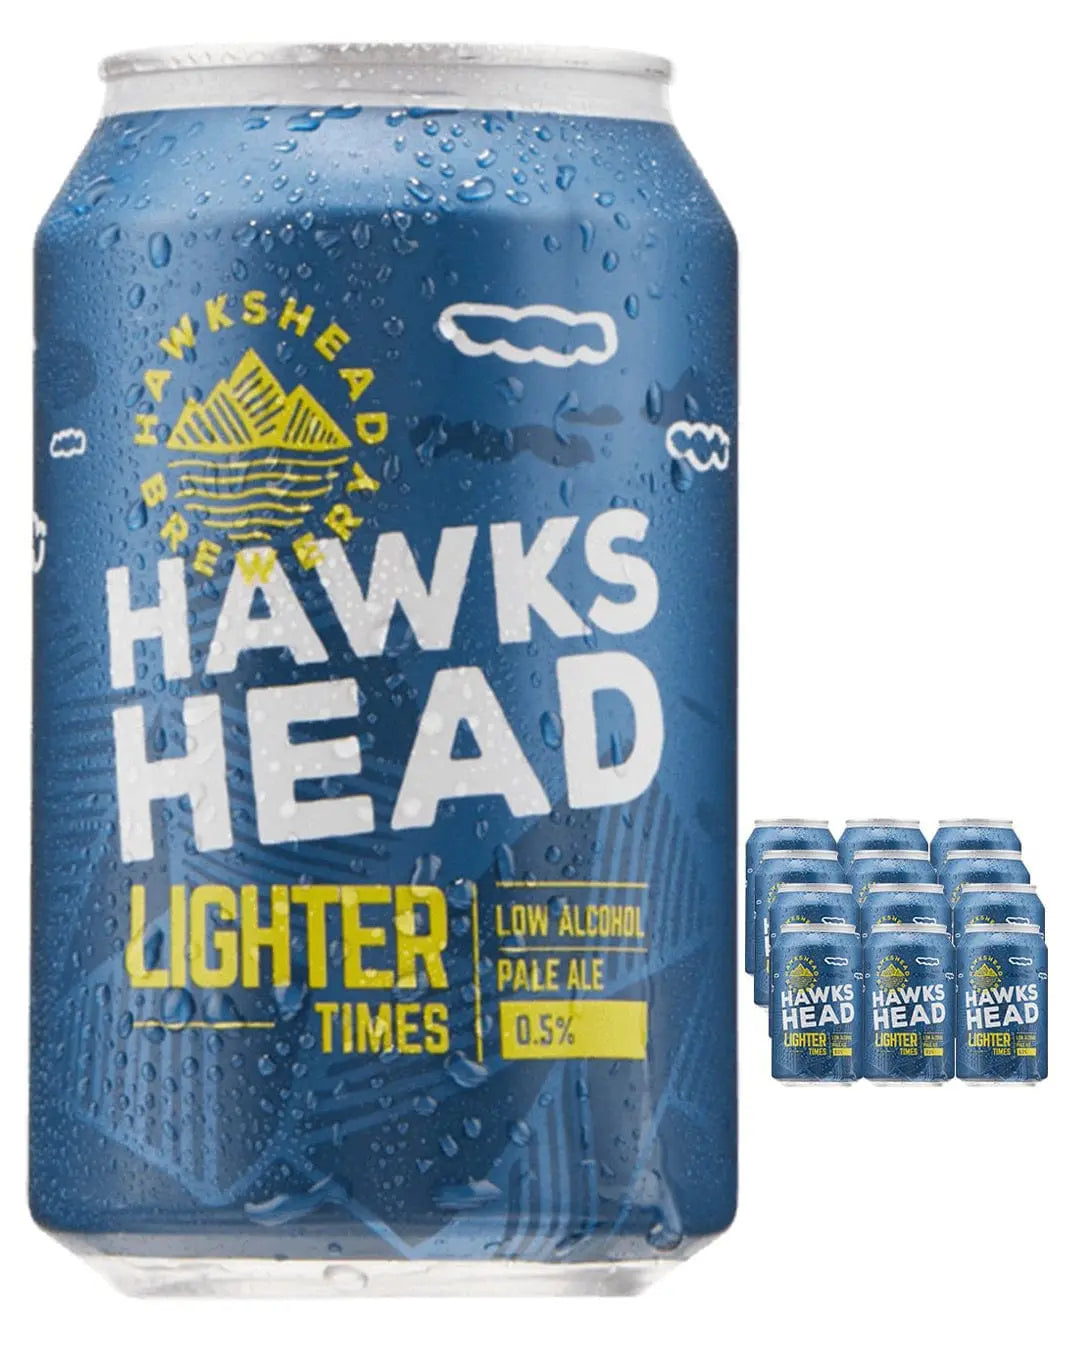 Hawkshead Lighter Times Ale Beer Can Multipack, 12 x 330 ml Beer